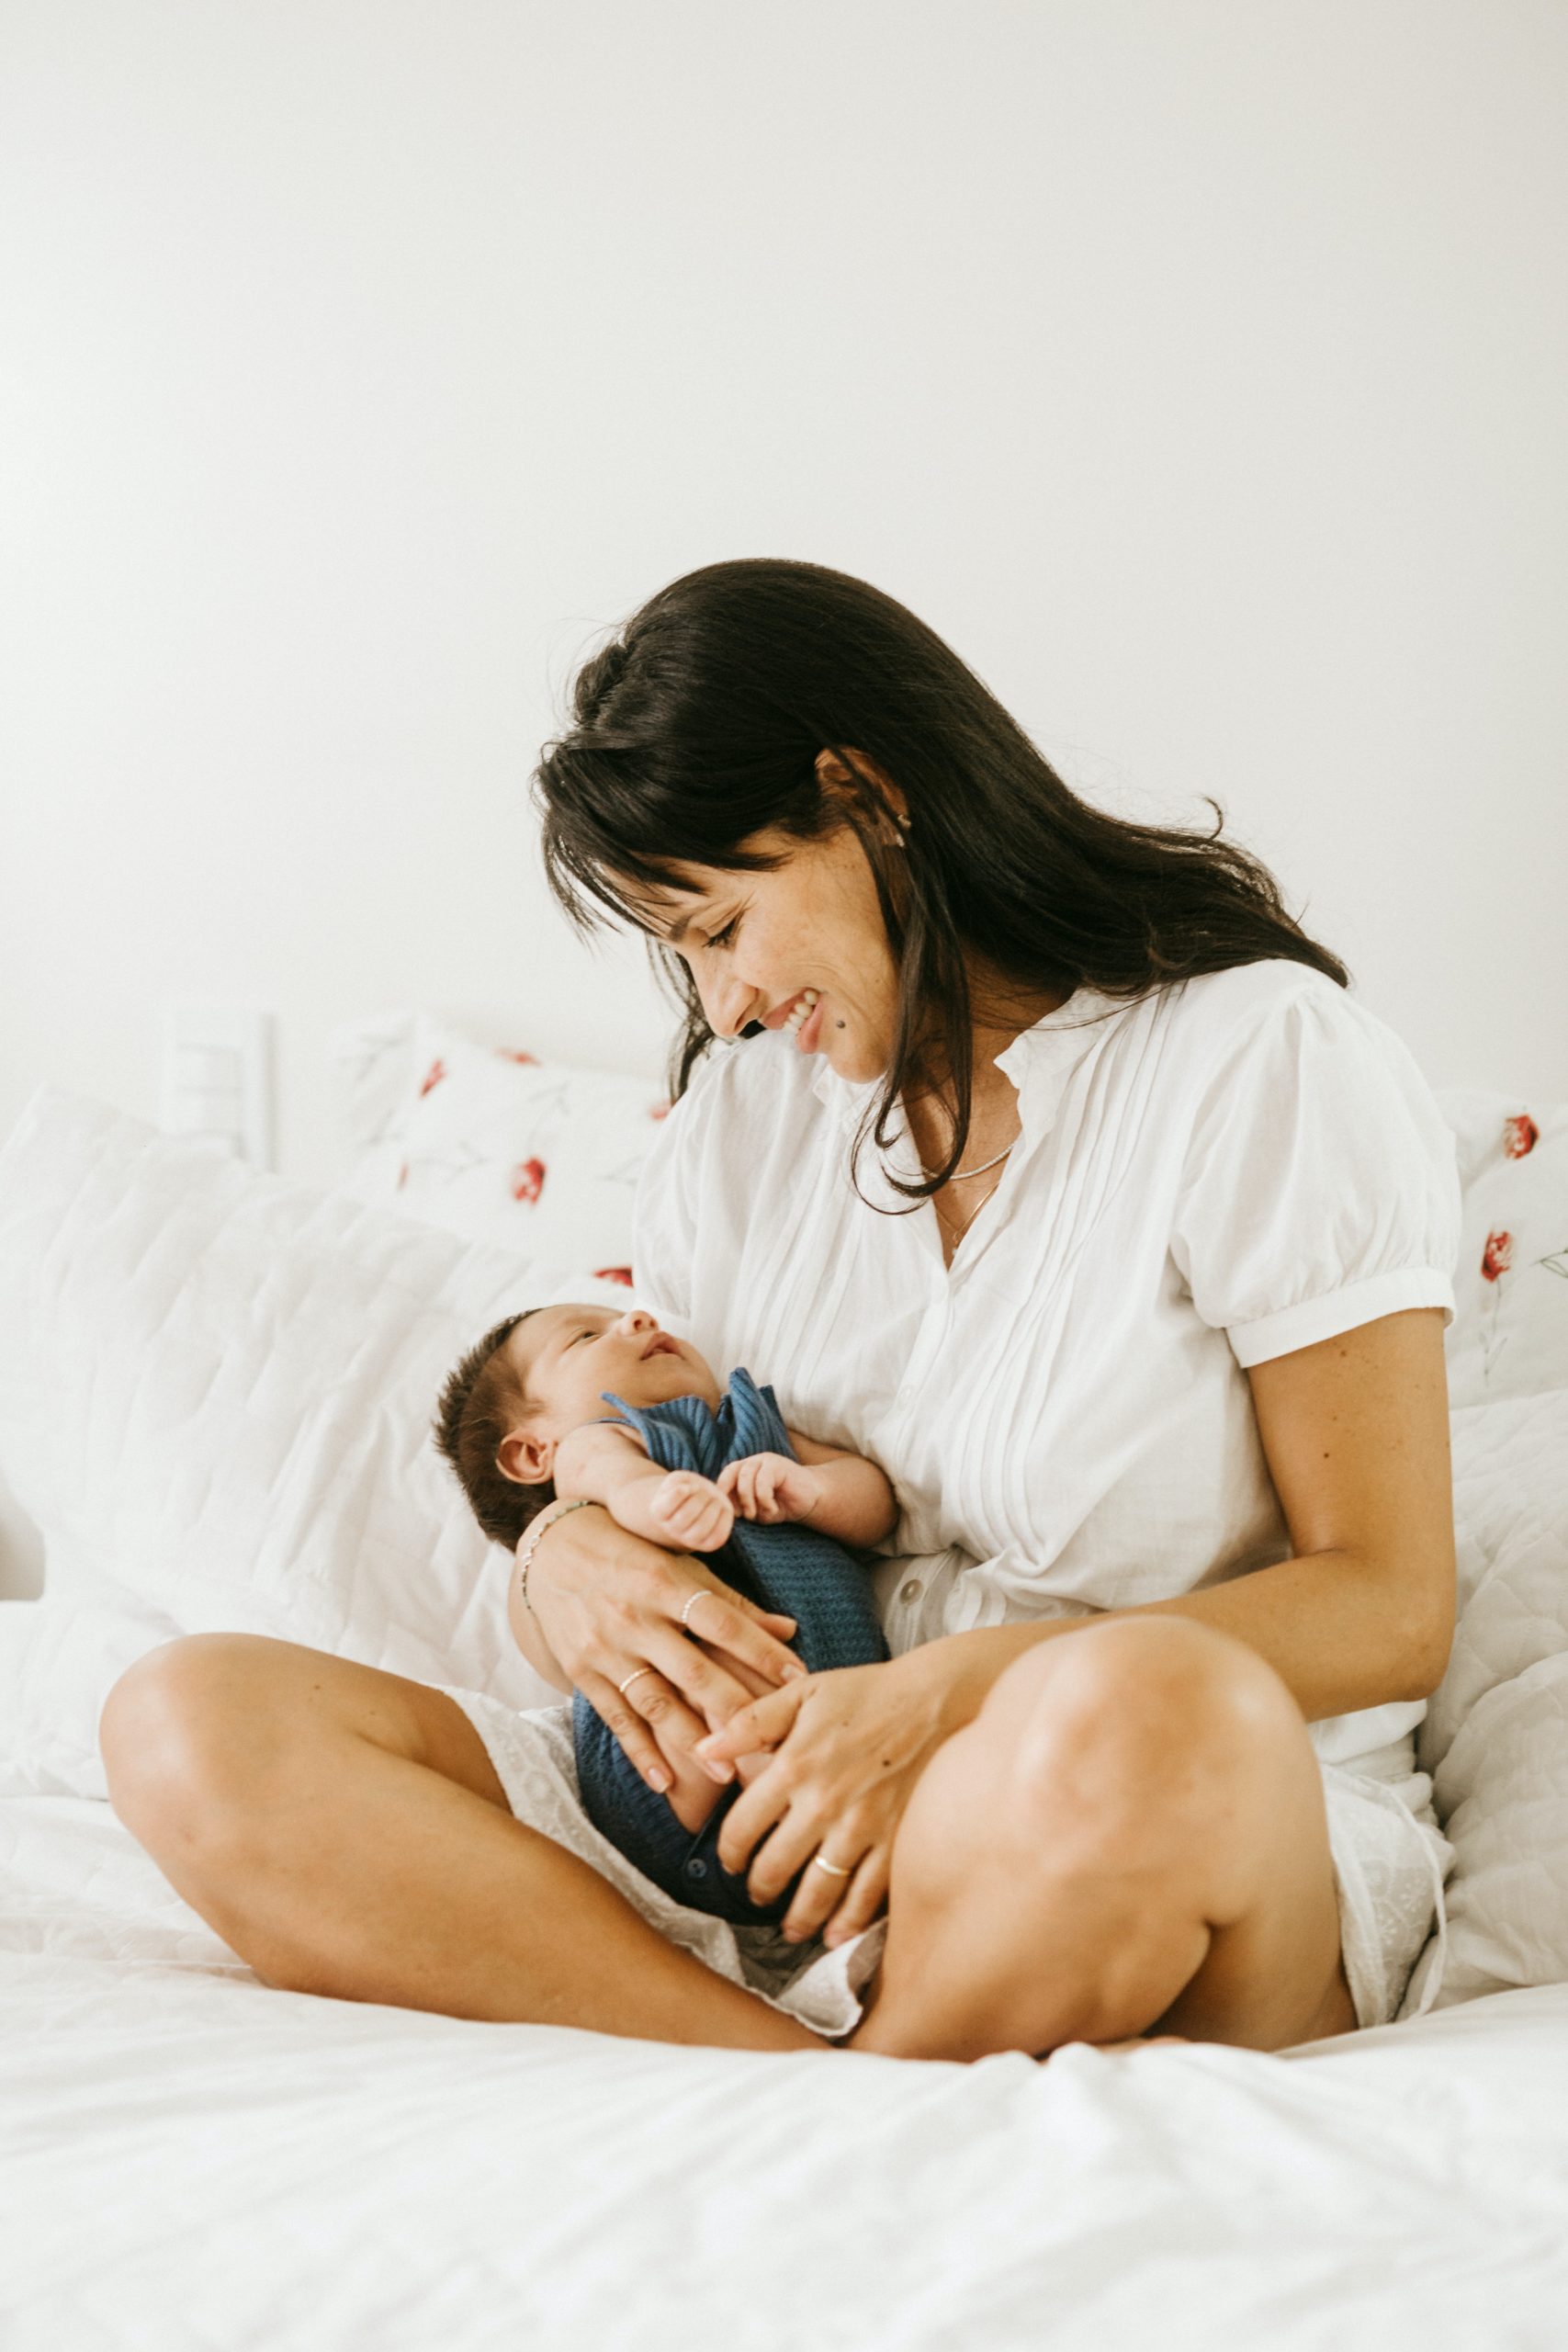 is emergen c safe while breastfeeding